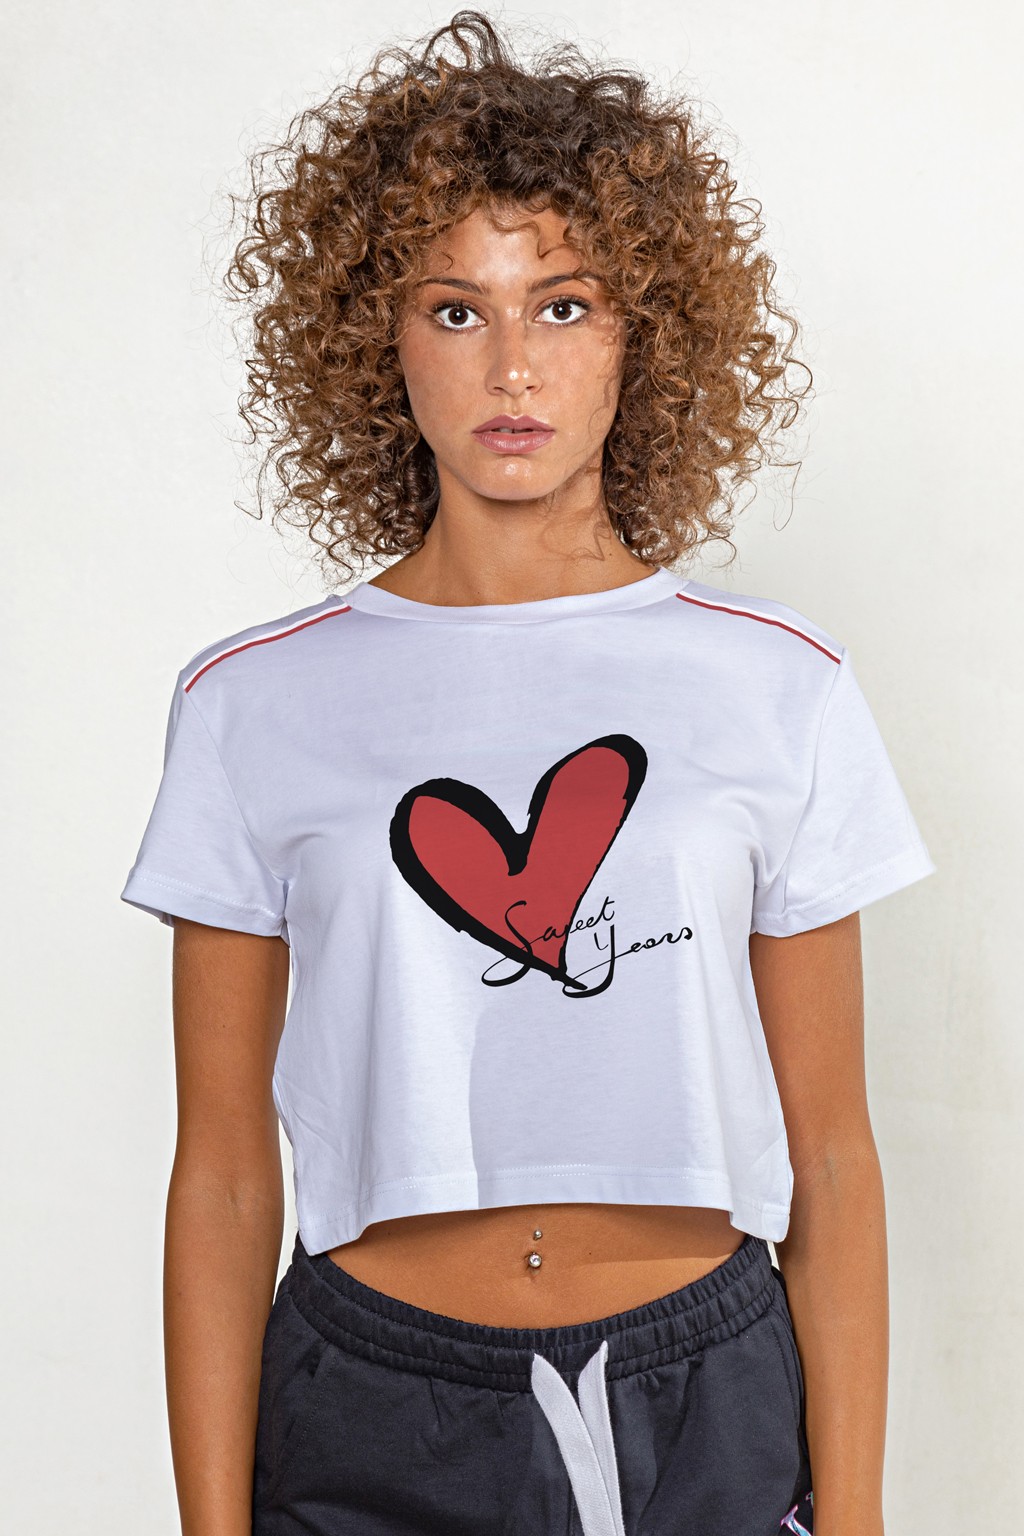 T-shirt corta girocollo donna in cotone tinta unita con stampa cuore.